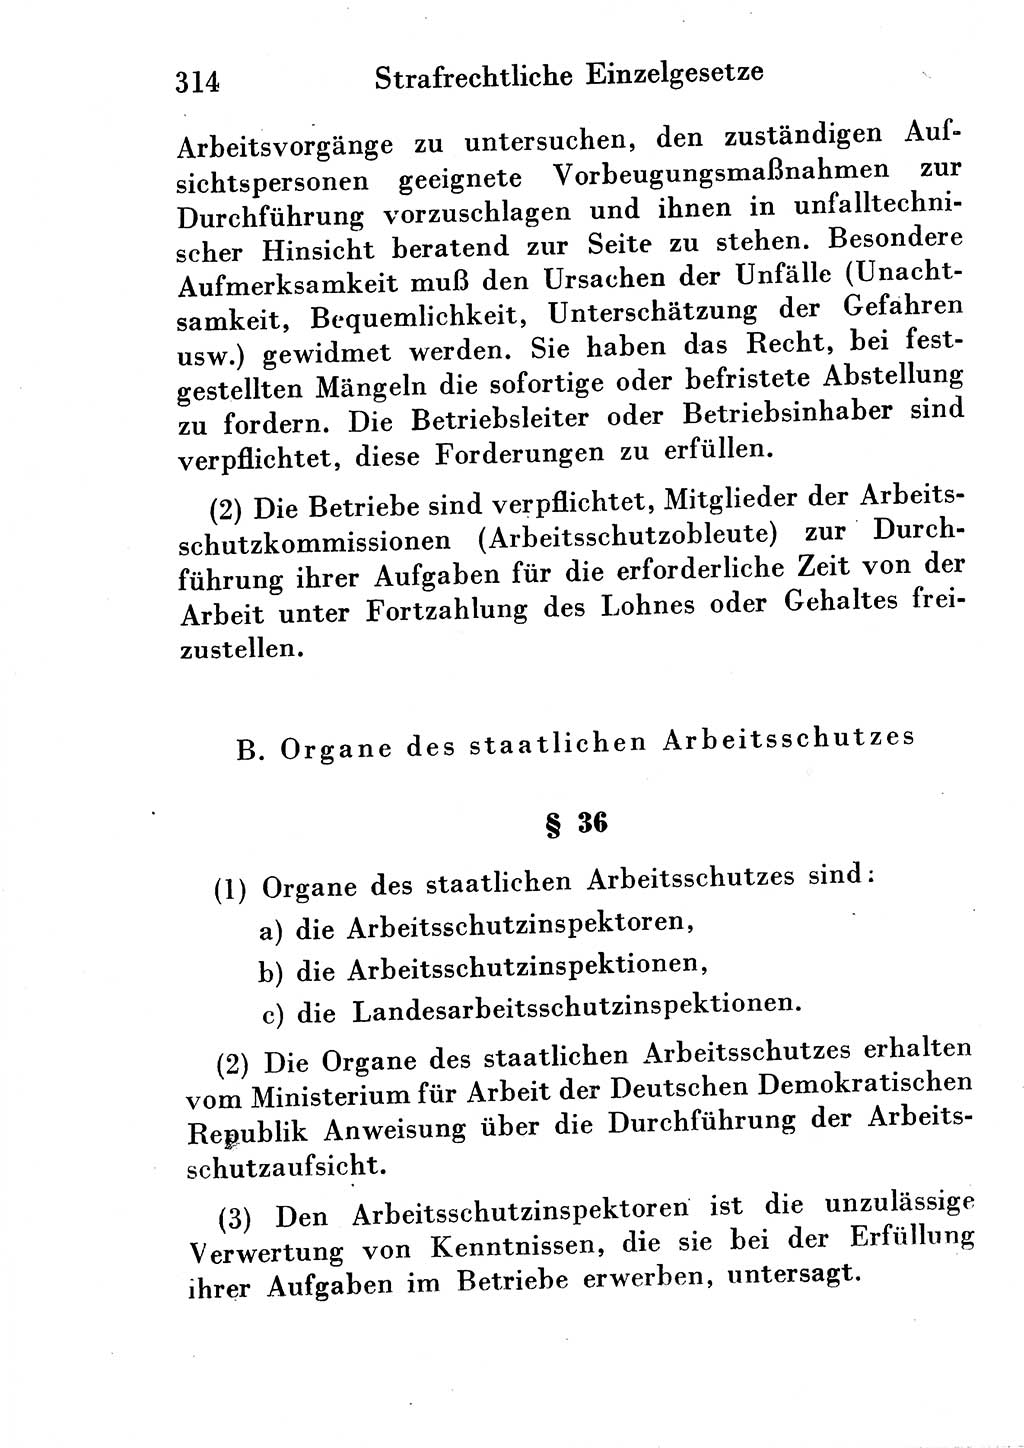 Strafgesetzbuch (StGB) und andere Strafgesetze [Deutsche Demokratische Republik (DDR)] 1954, Seite 314 (StGB Strafges. DDR 1954, S. 314)